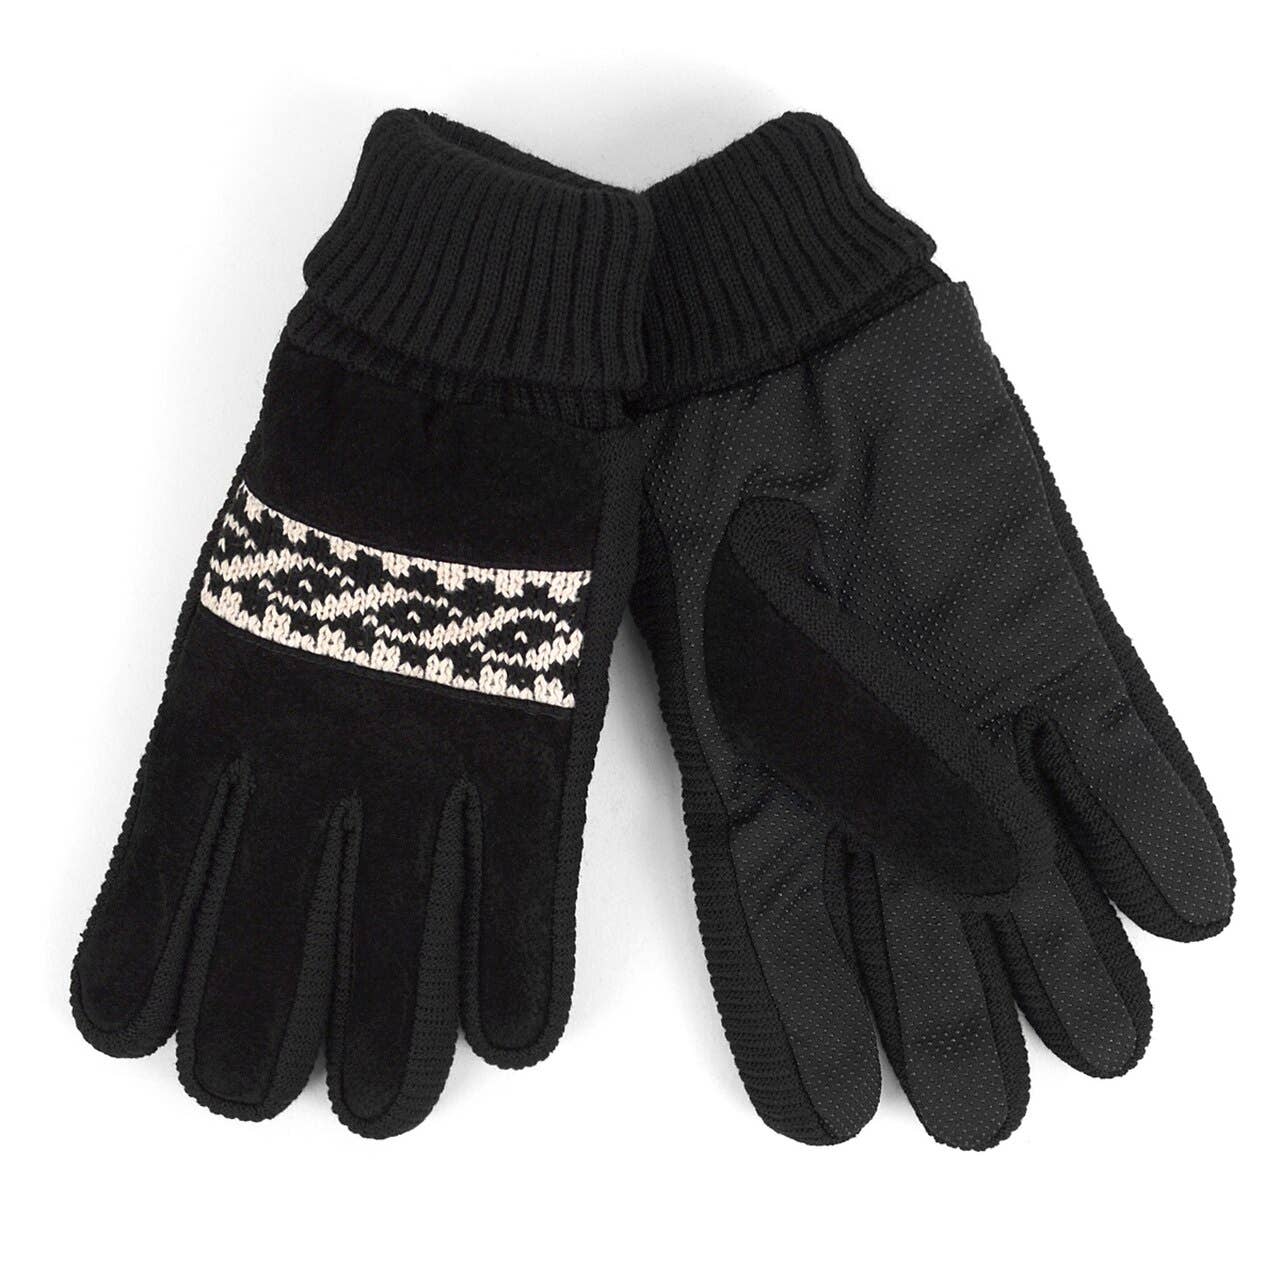 Men's Genuine Leather Non Slip Grip Winter Gloves: Grey / L/XL